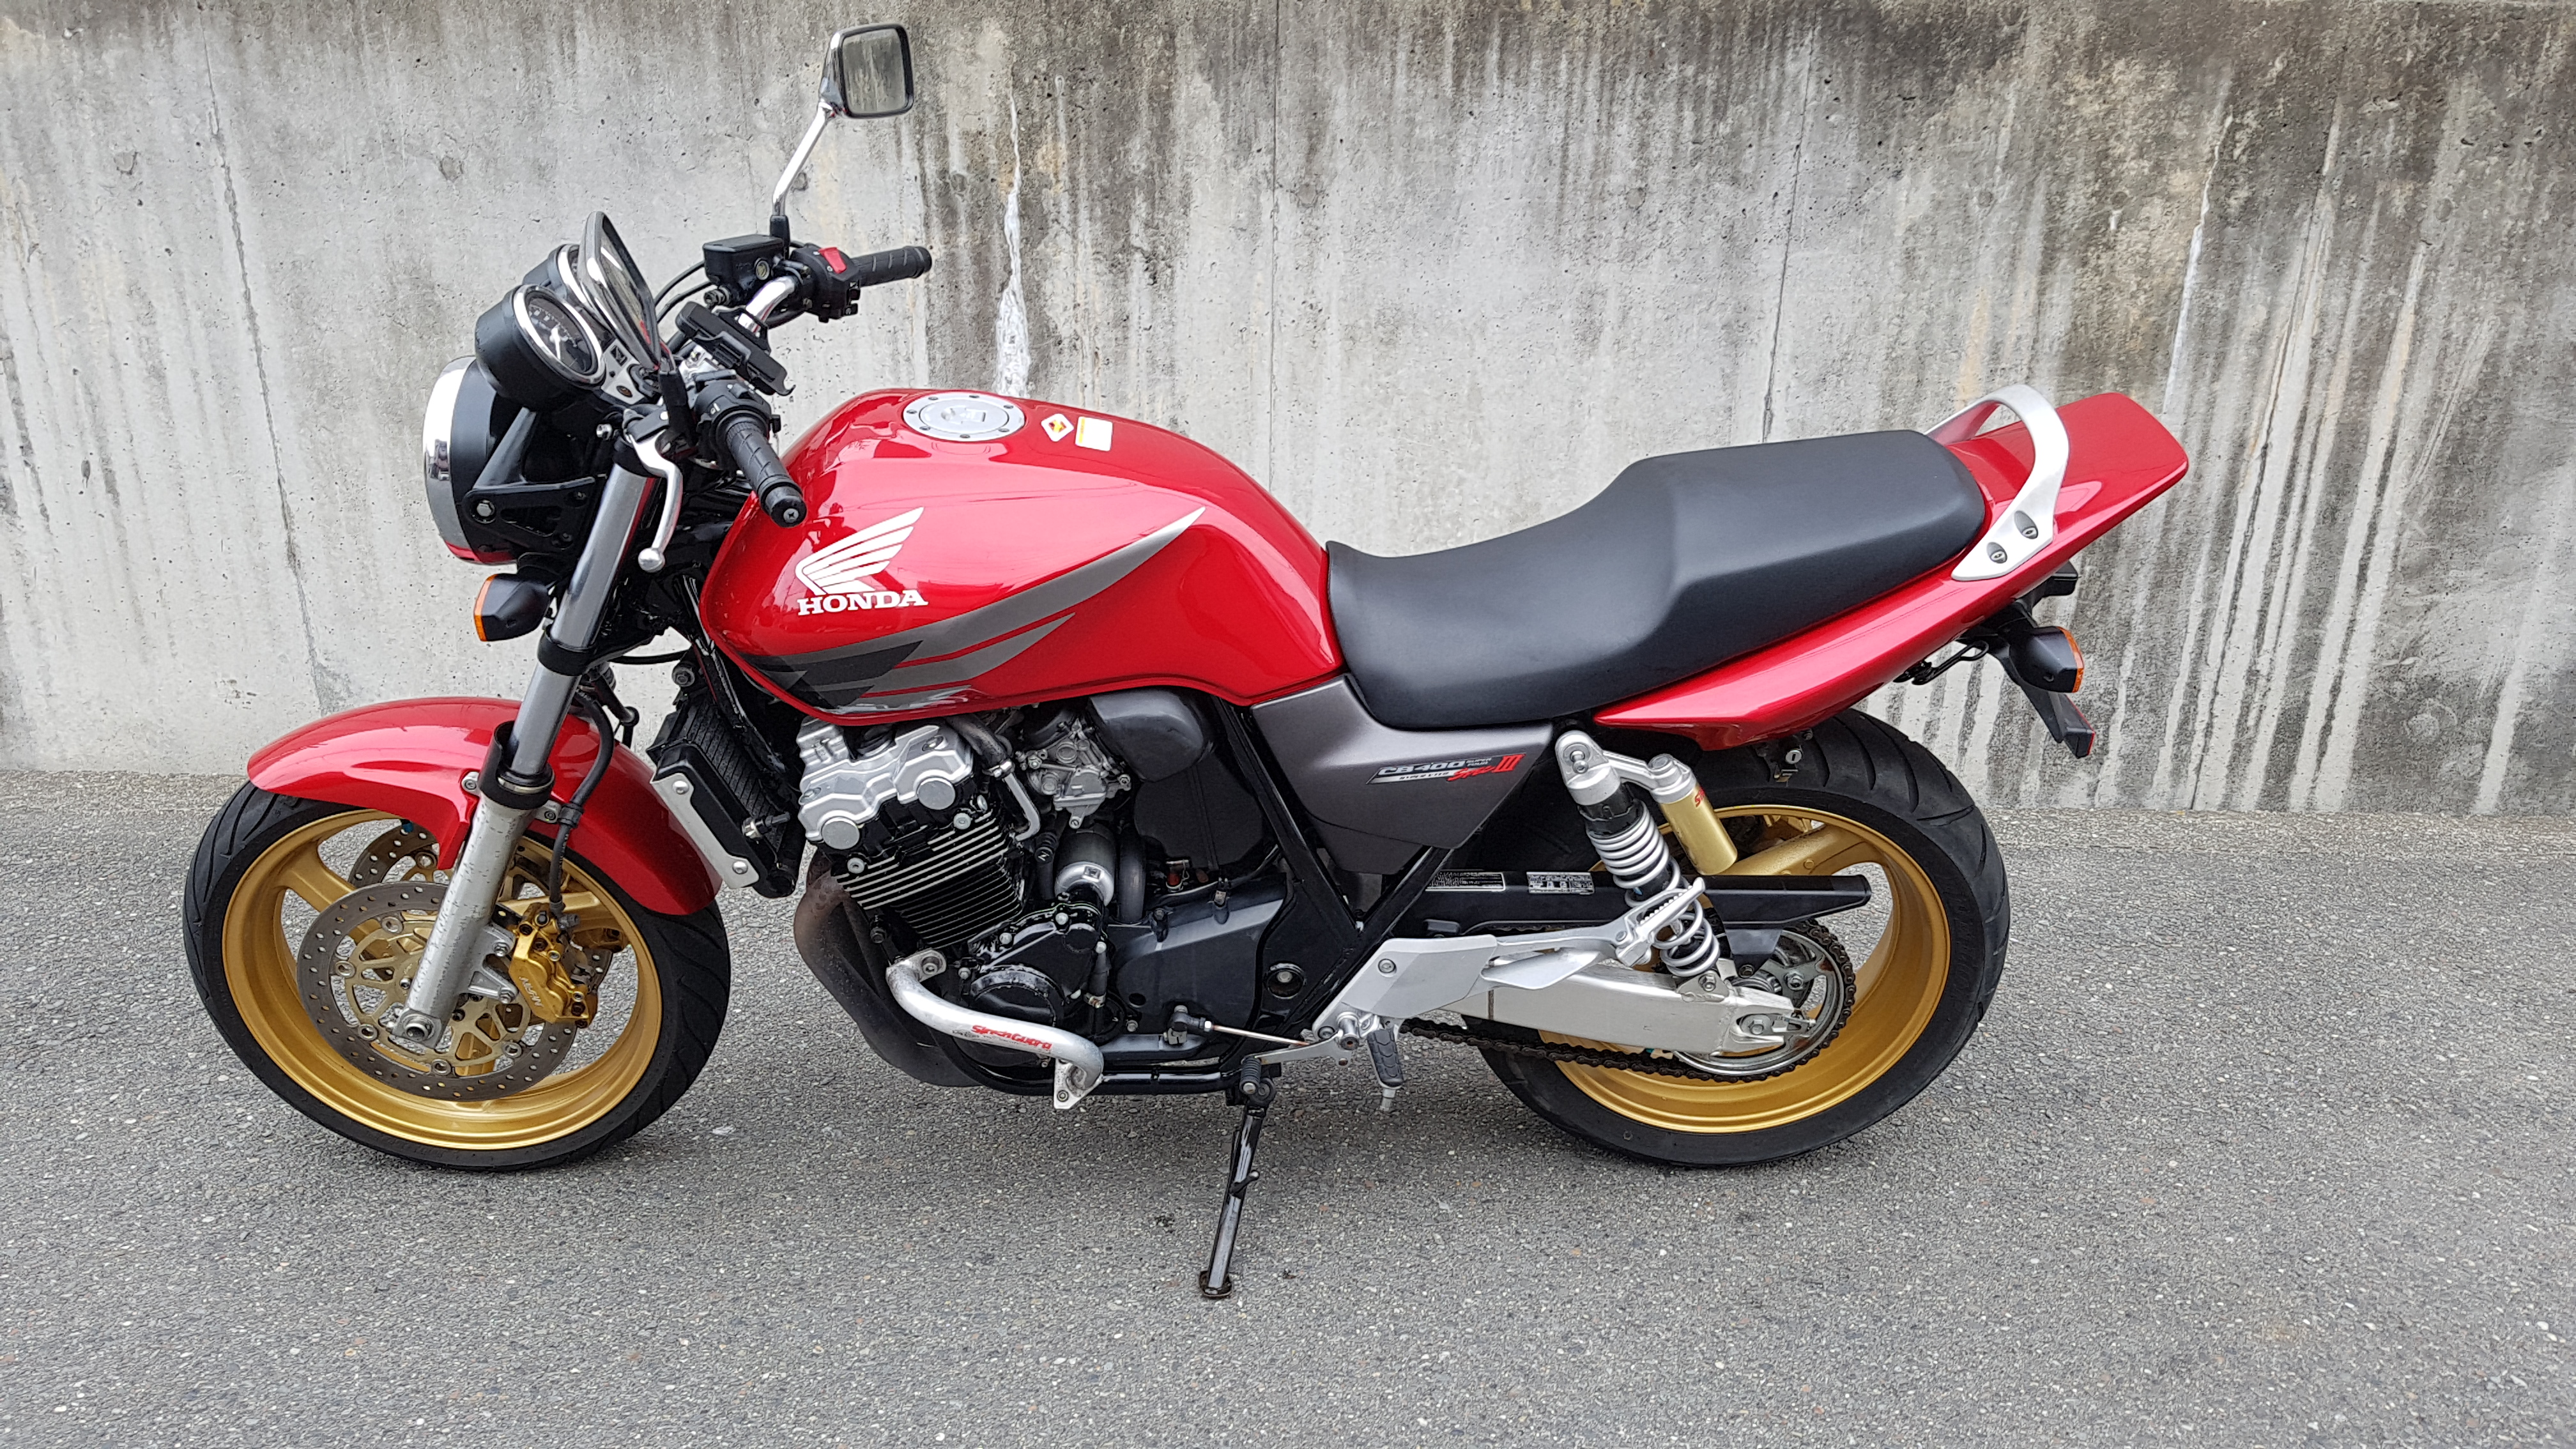 Мотоцикл honda cb 400 sf